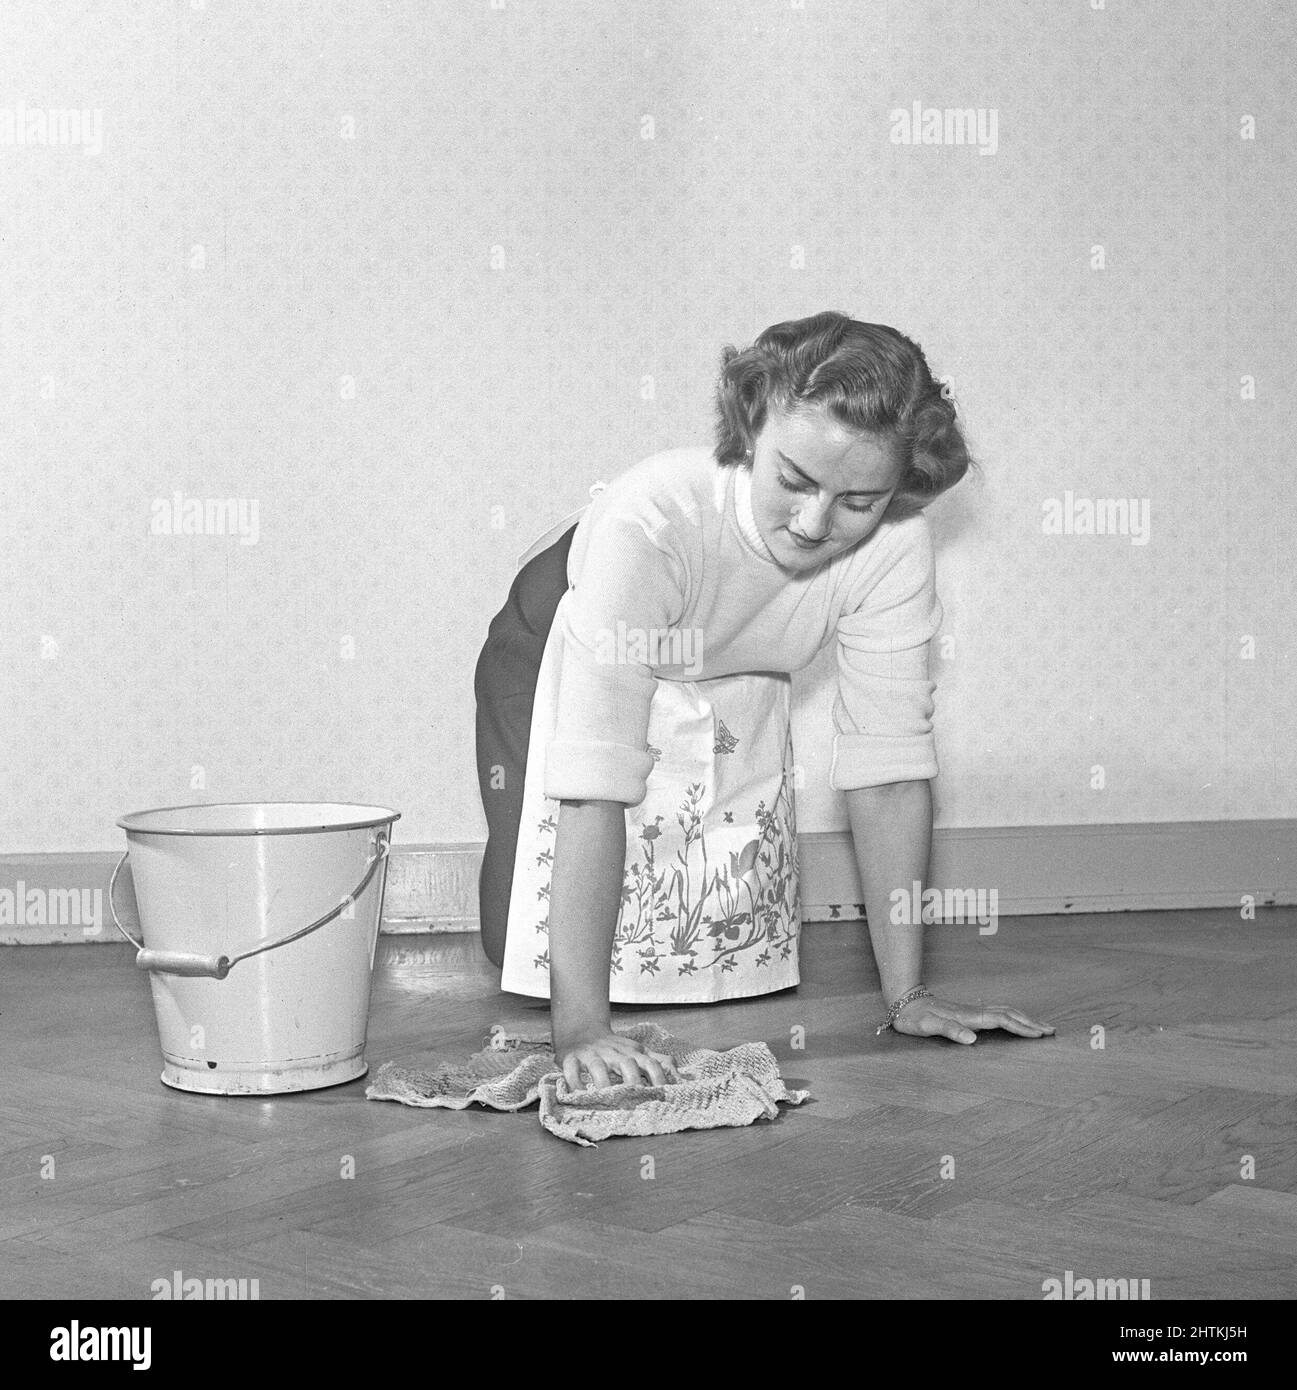 Reinigen des Bodens damals. Eine junge Frau liegt auf dem Boden und verwendet eine Scheuerbürste, um den Boden sauber zu machen. Schweden 1952 Kristoffersson Ref. BD49-8 Stockfoto